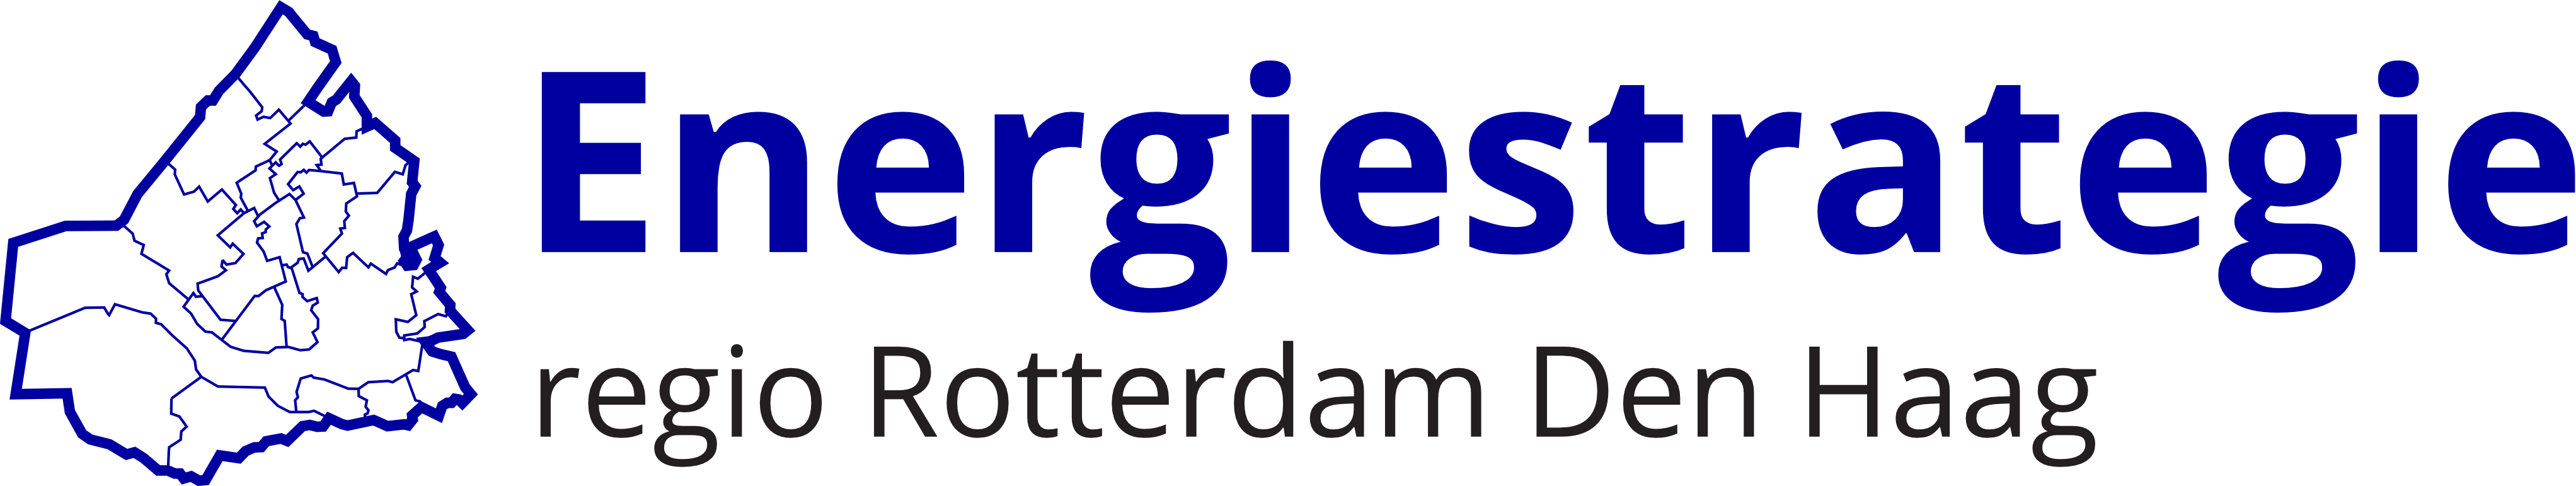 RES Rotterdam Den Haag logo